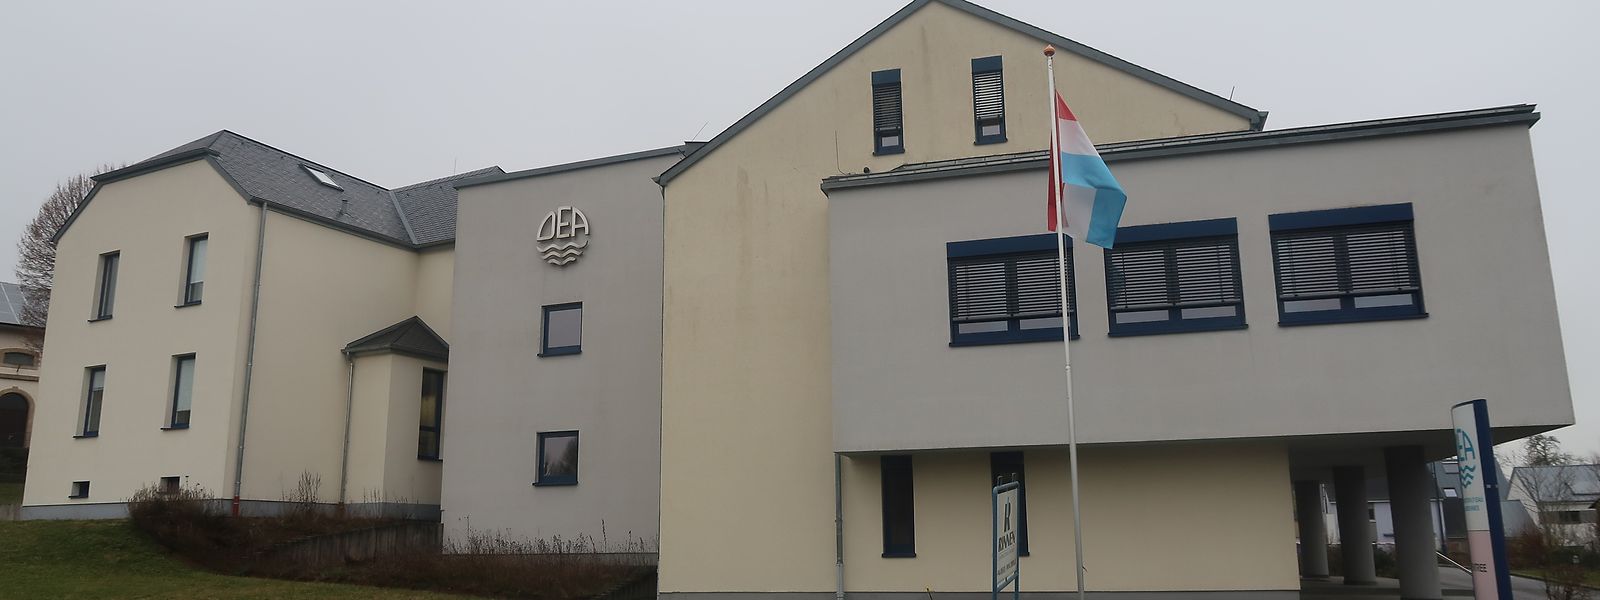 Der Verwaltungssitz des Trinkwassersyndikats DEA in Useldingen wurde 2009 offiziell eingeweiht und wird aktuell erweitert.